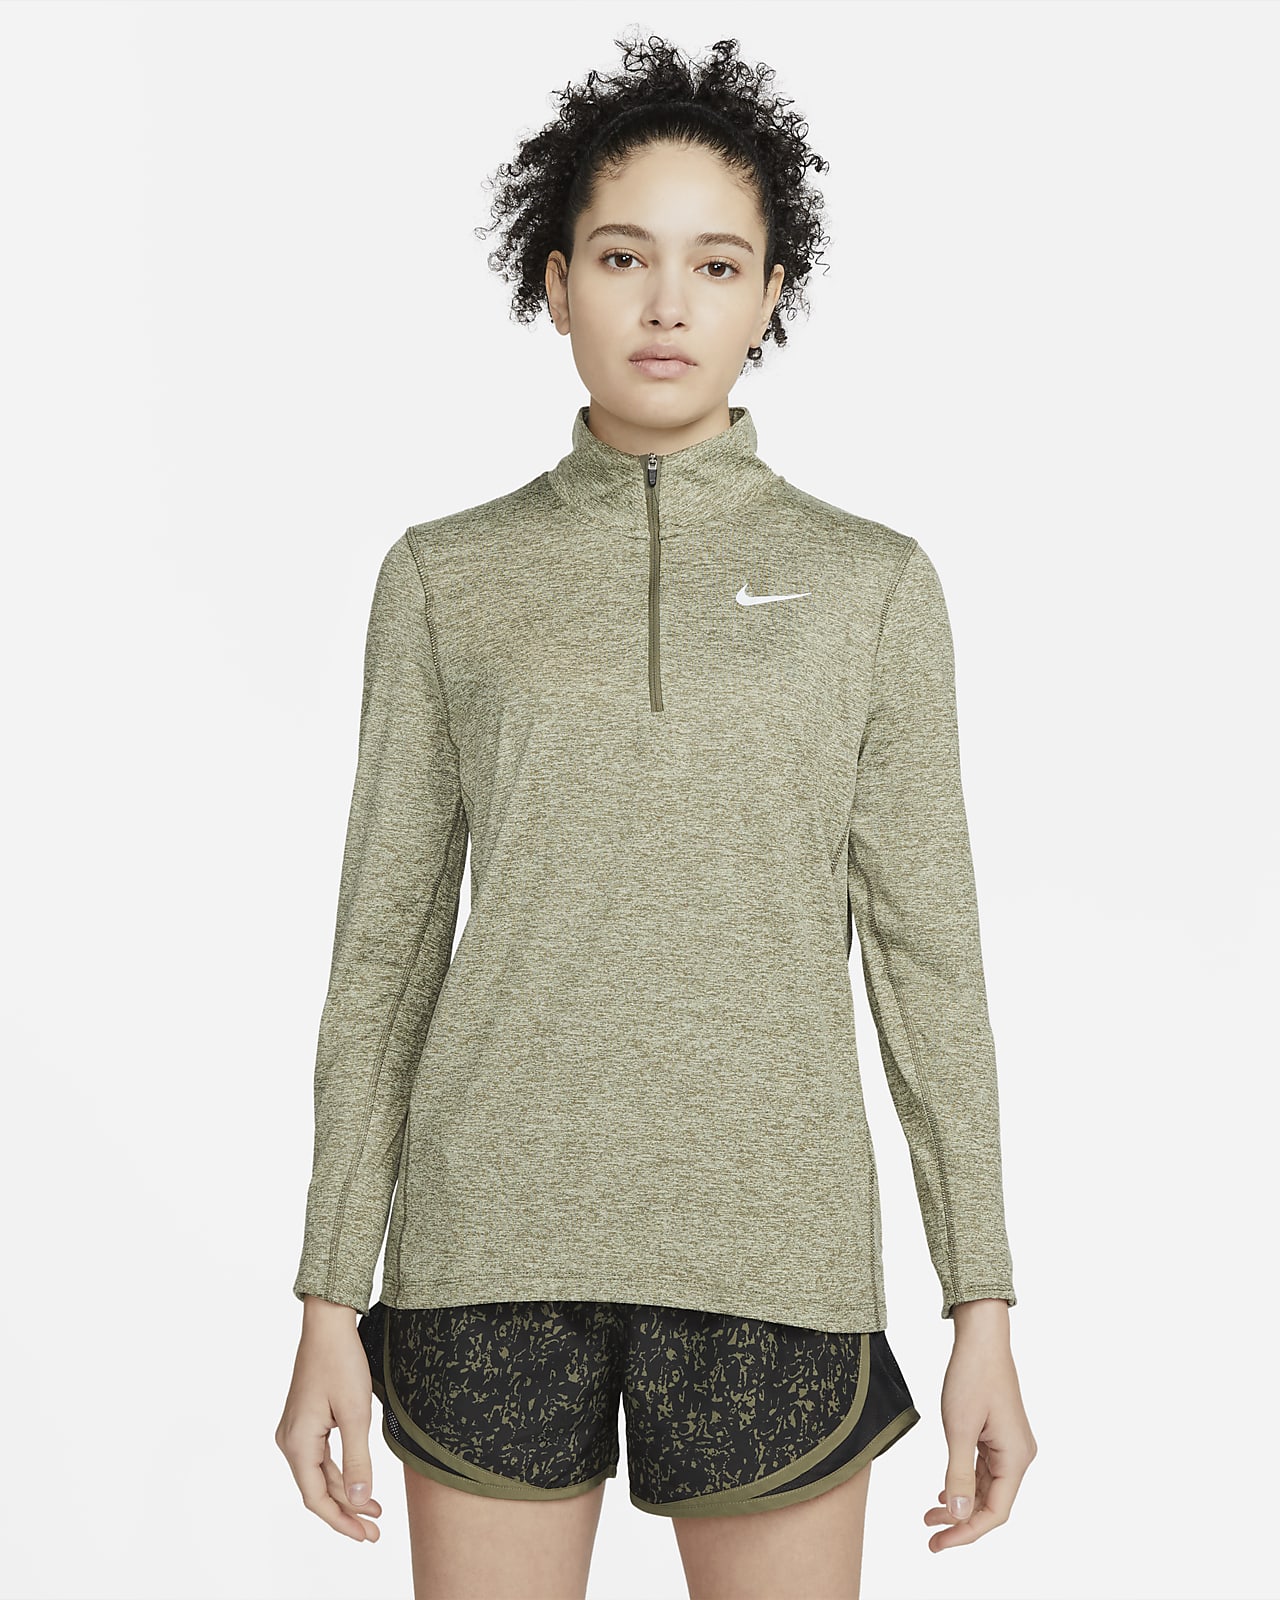 Nike Part superior amb mitja cremallera de running - Dona